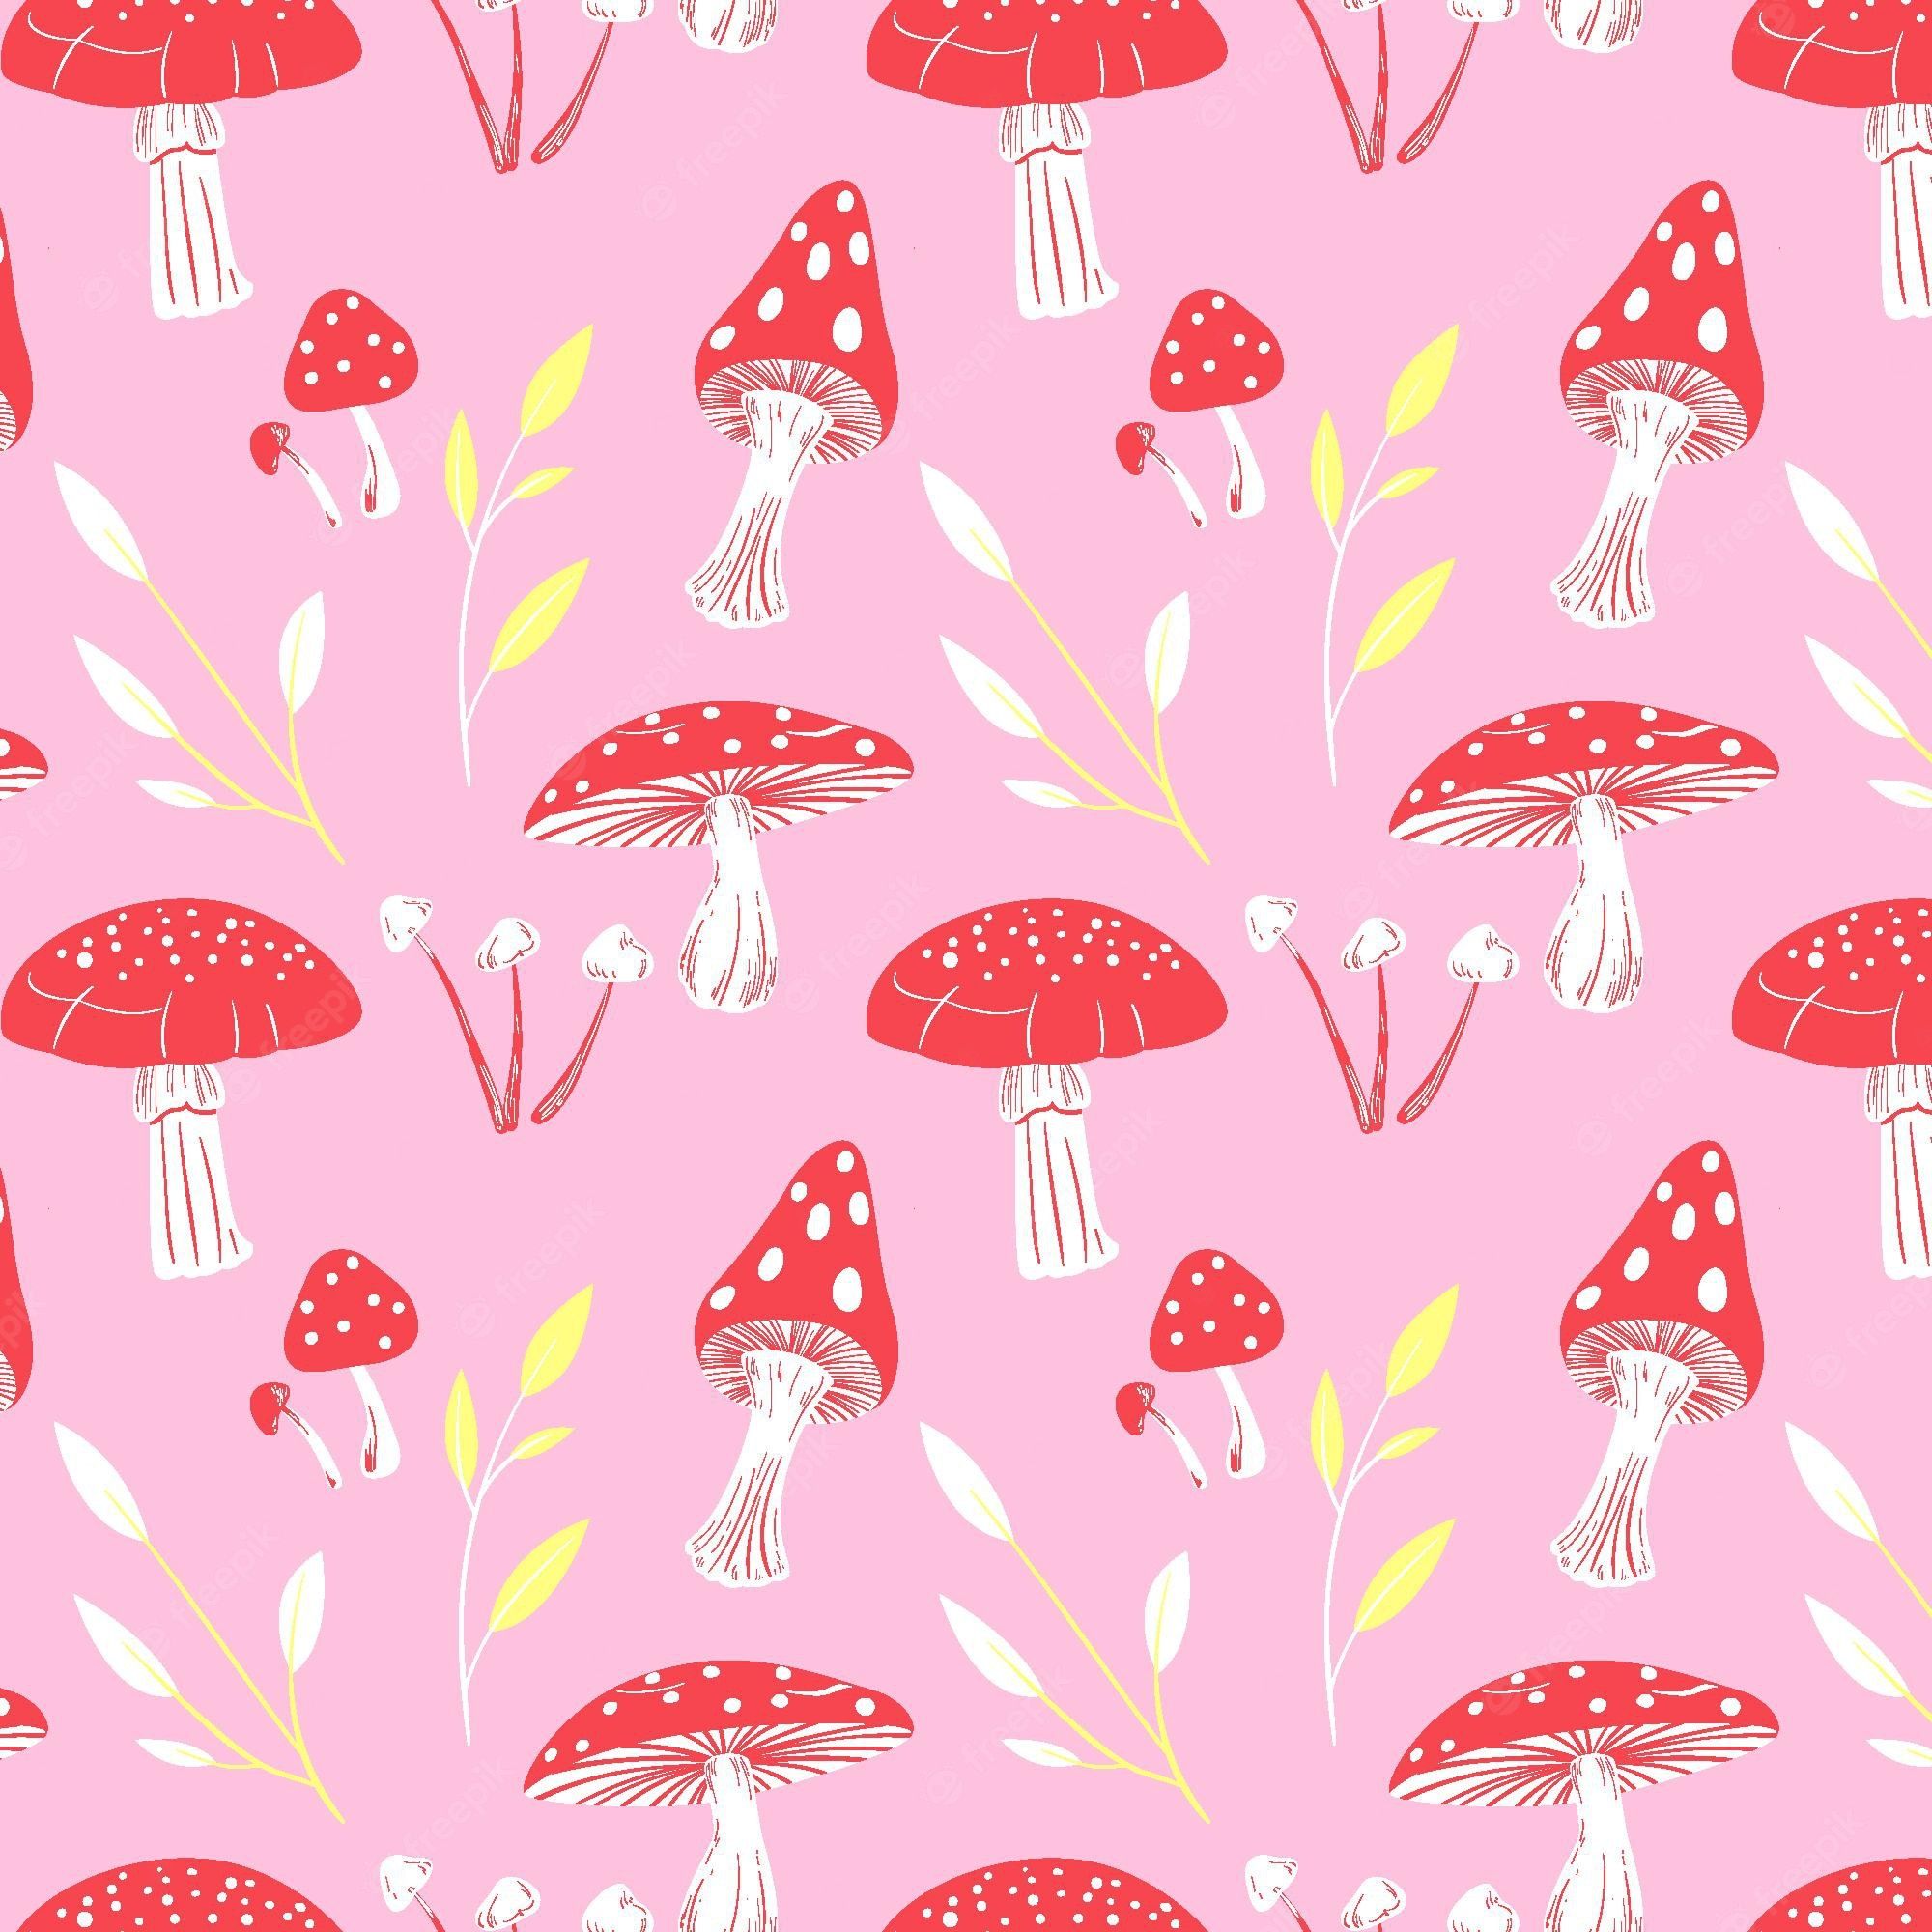 Mushroom Wallpaper Image